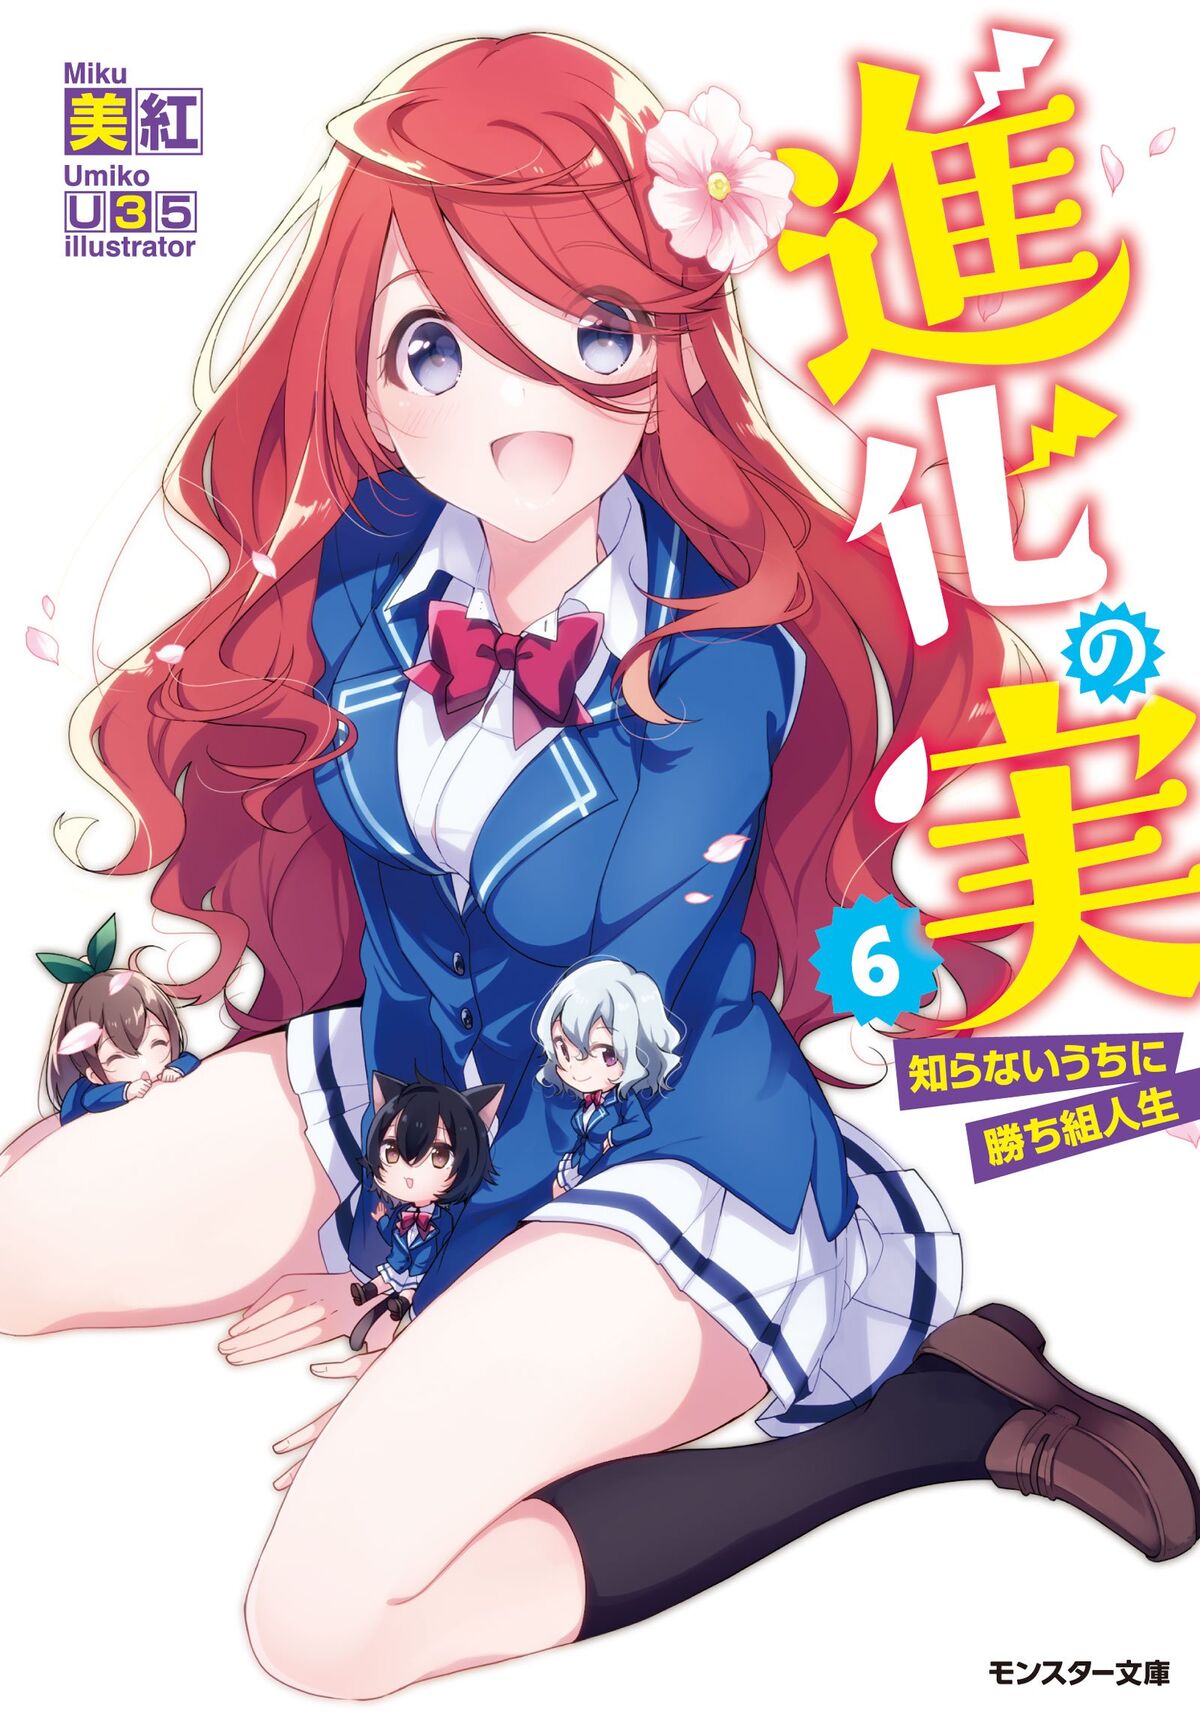 Manga Volume 5, Shinka no Mi Wiki